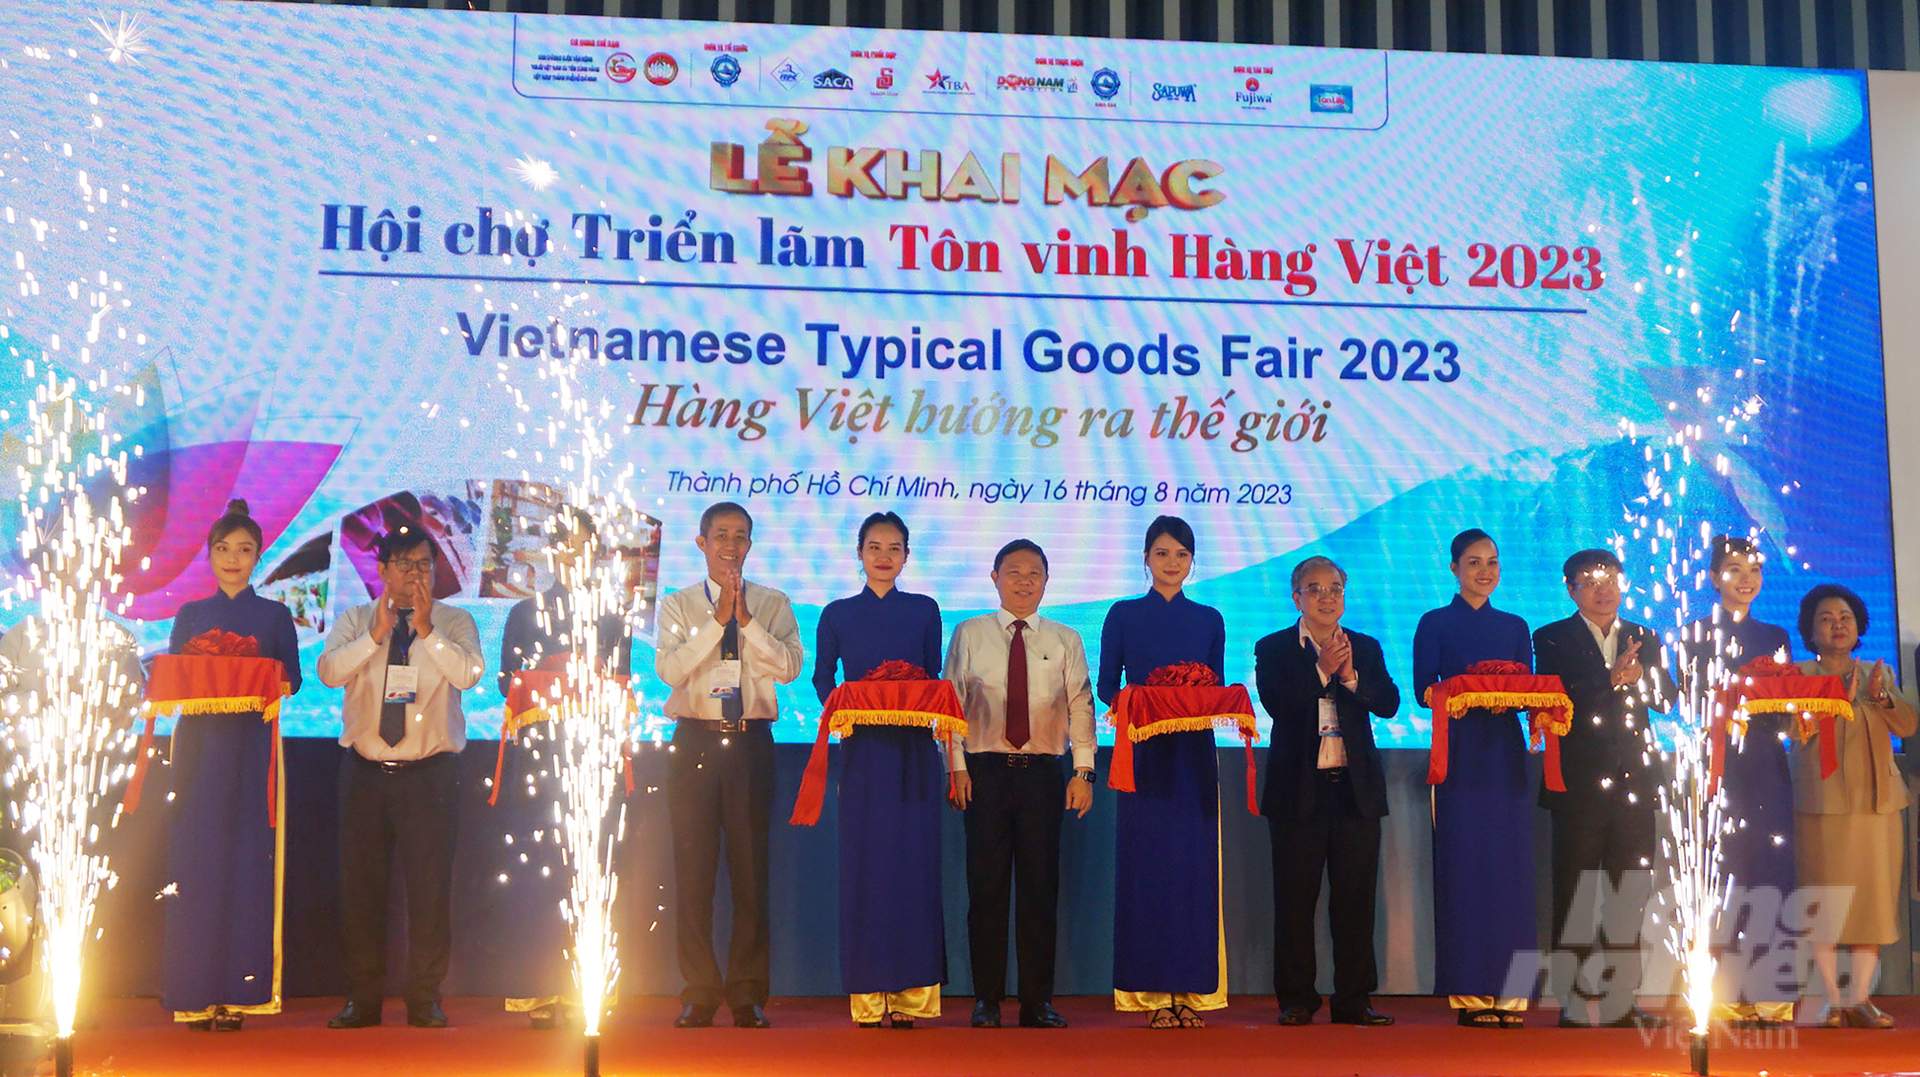 Cơ hội để doanh nghiệp Việt tìm kiếm nhà mua hàng tiềm năng